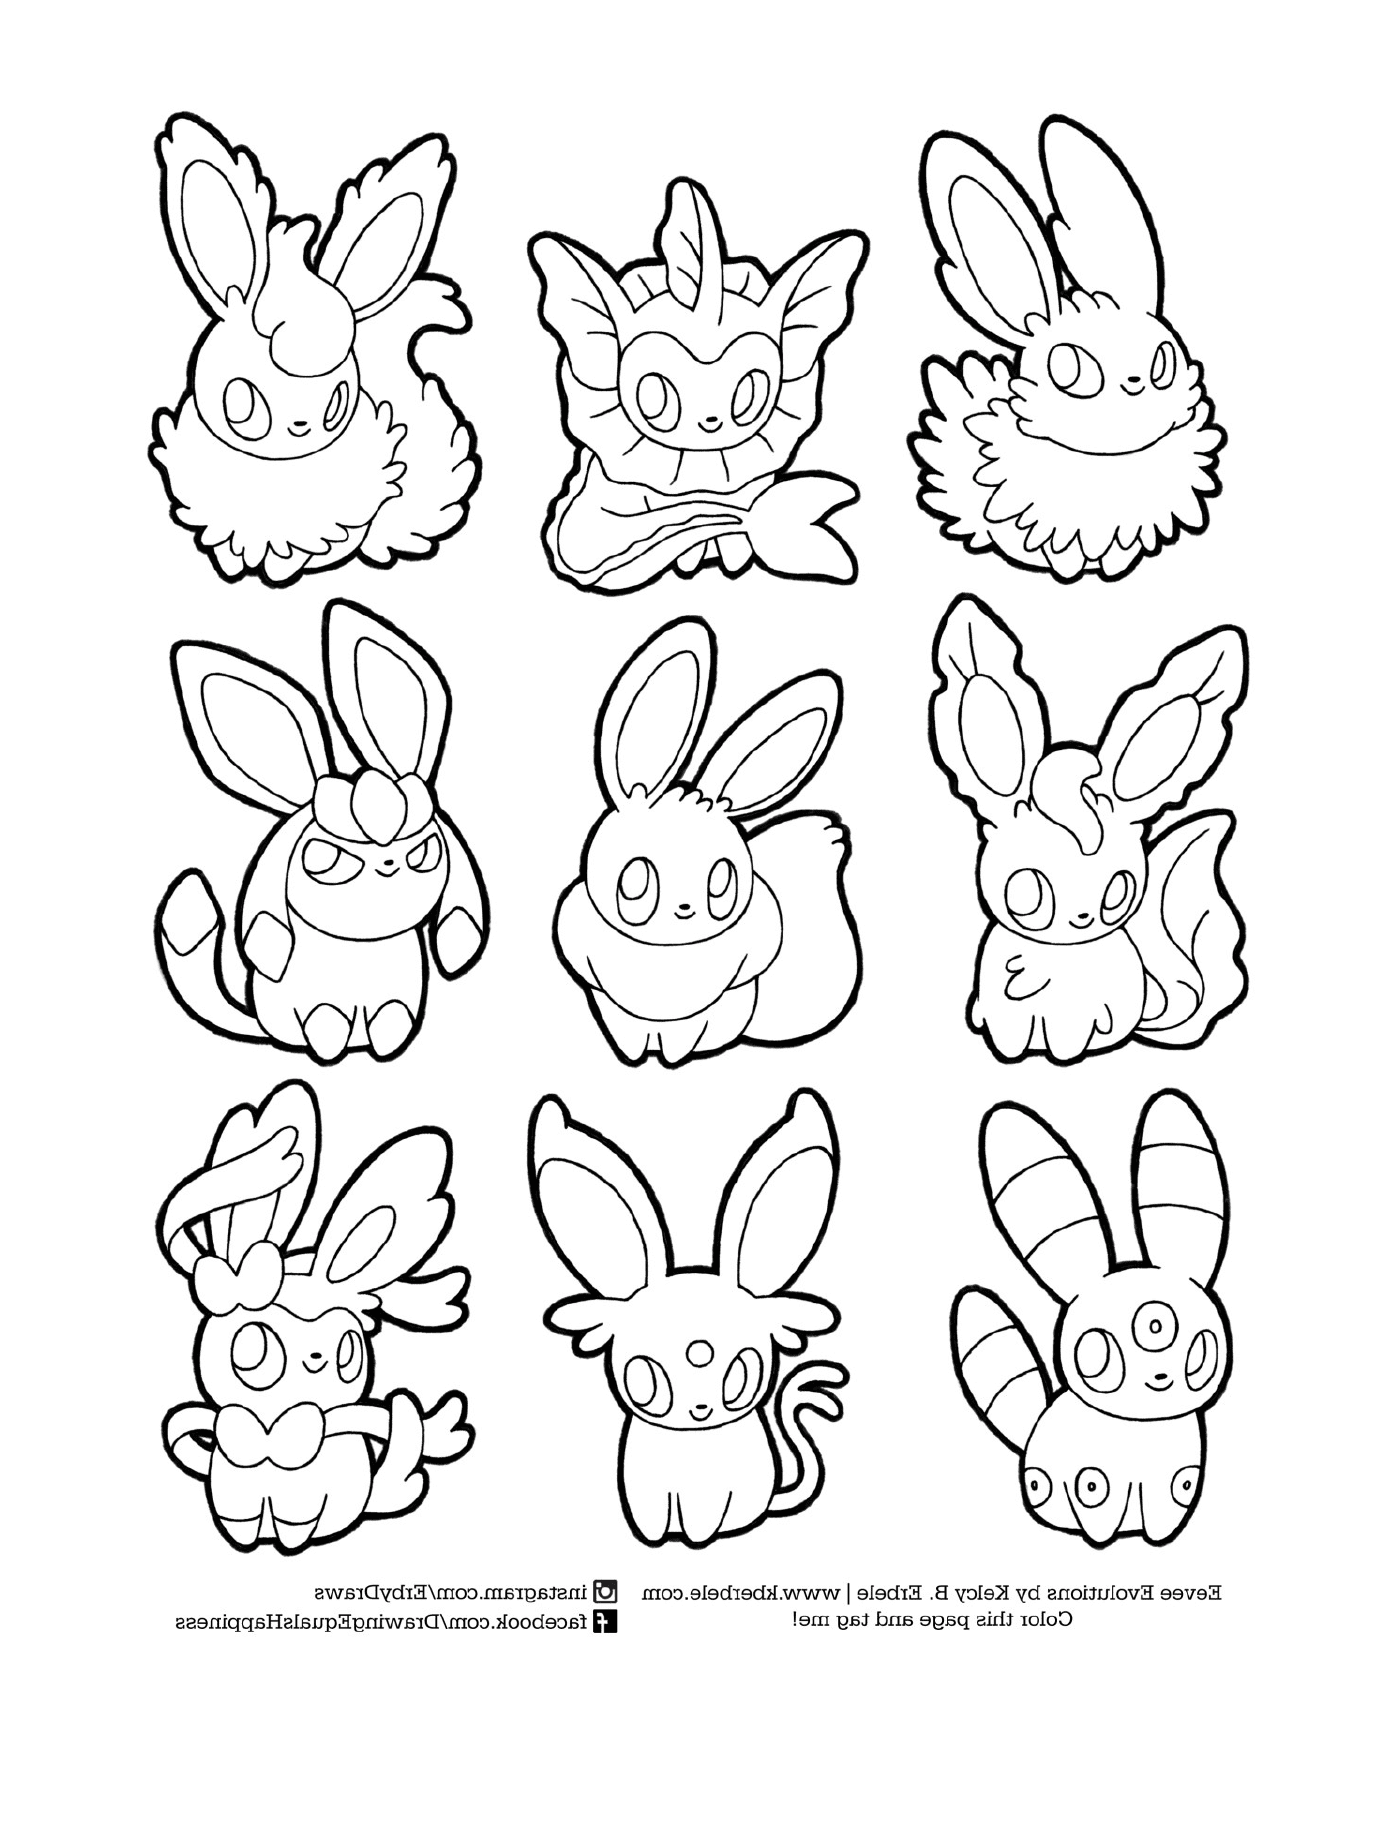   Évolutions d'Évoli, ensemble de neuf lapins cartoon 